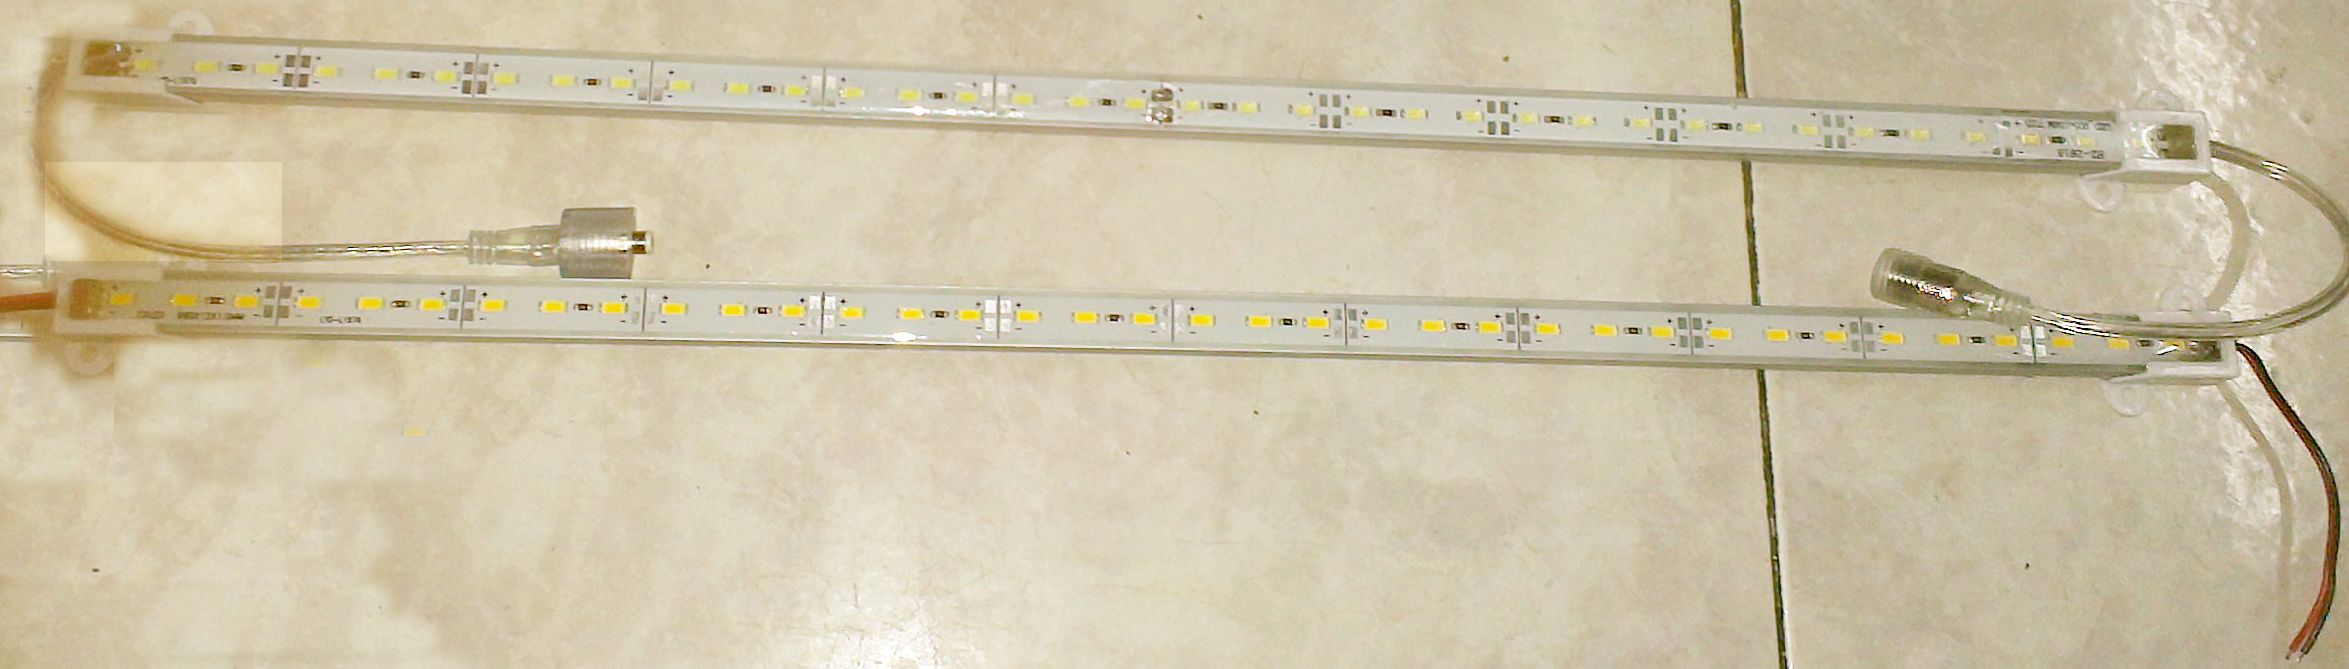 30x tira dura led à prova d'água IP68 5630 Smd quente barra rígida branca 36 LEDs 0,5 metro luz com